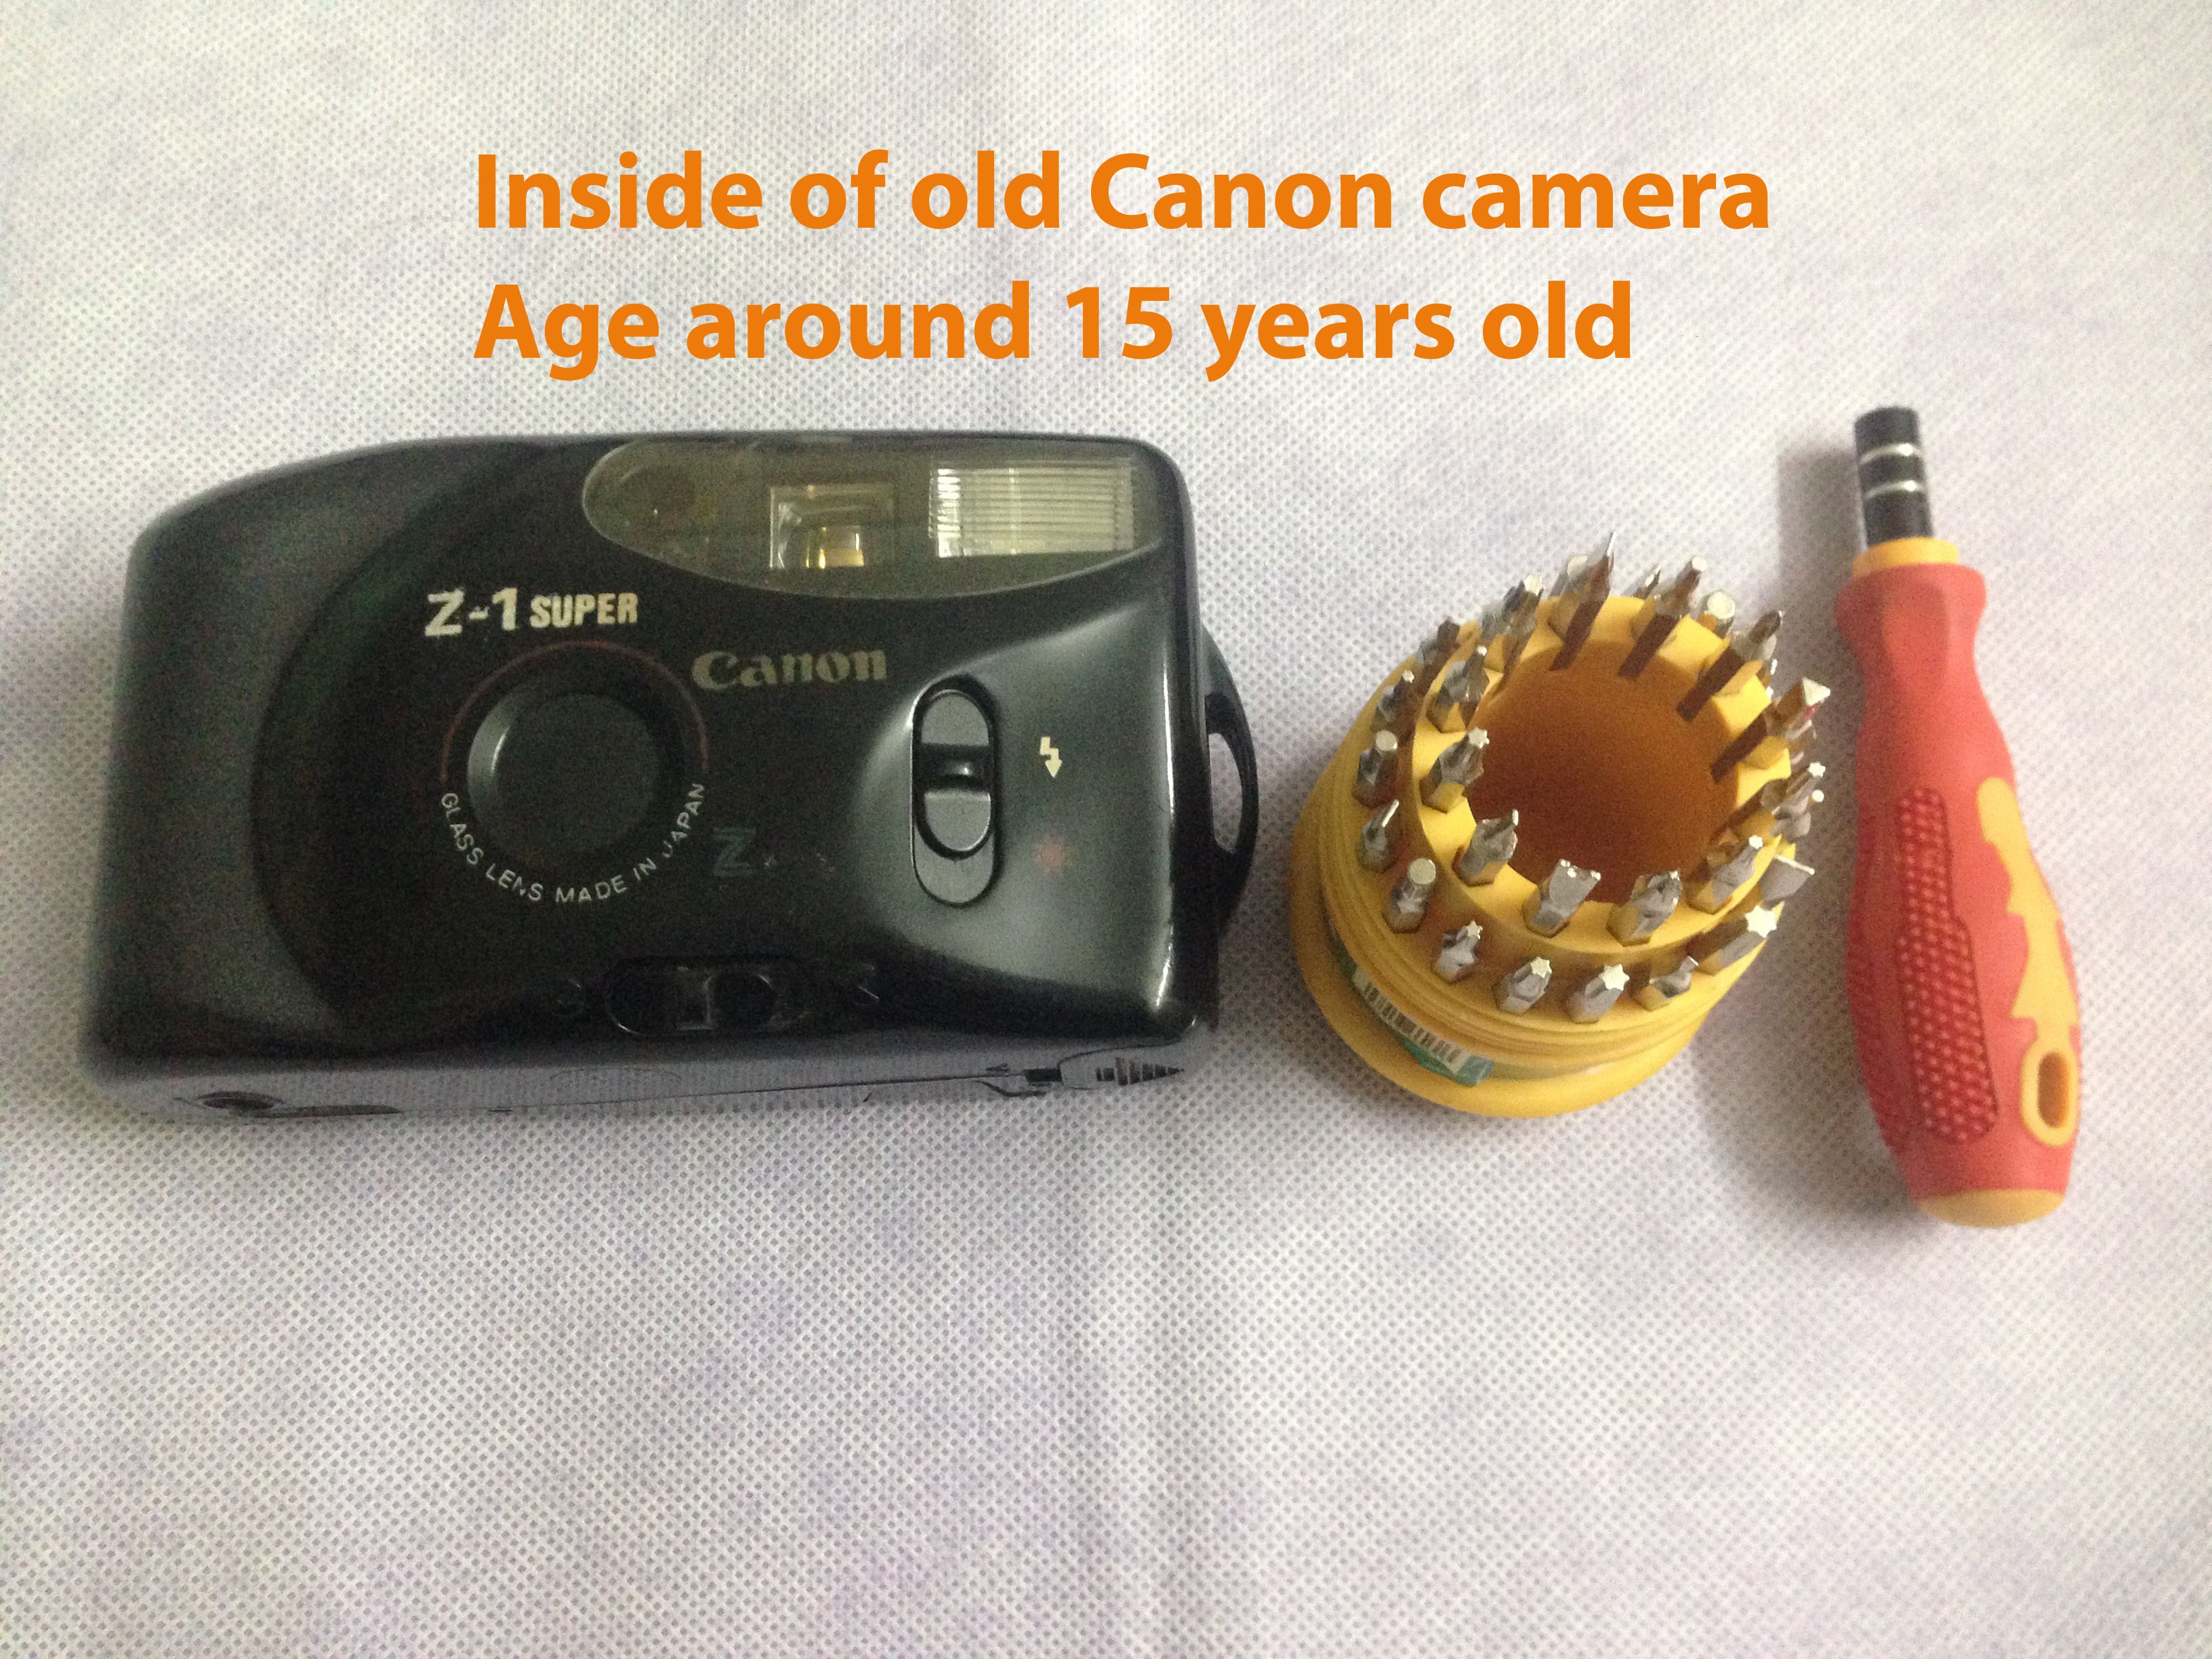 Canon Camera | Old camera | Camera inside | manual camera #2 - YouTube